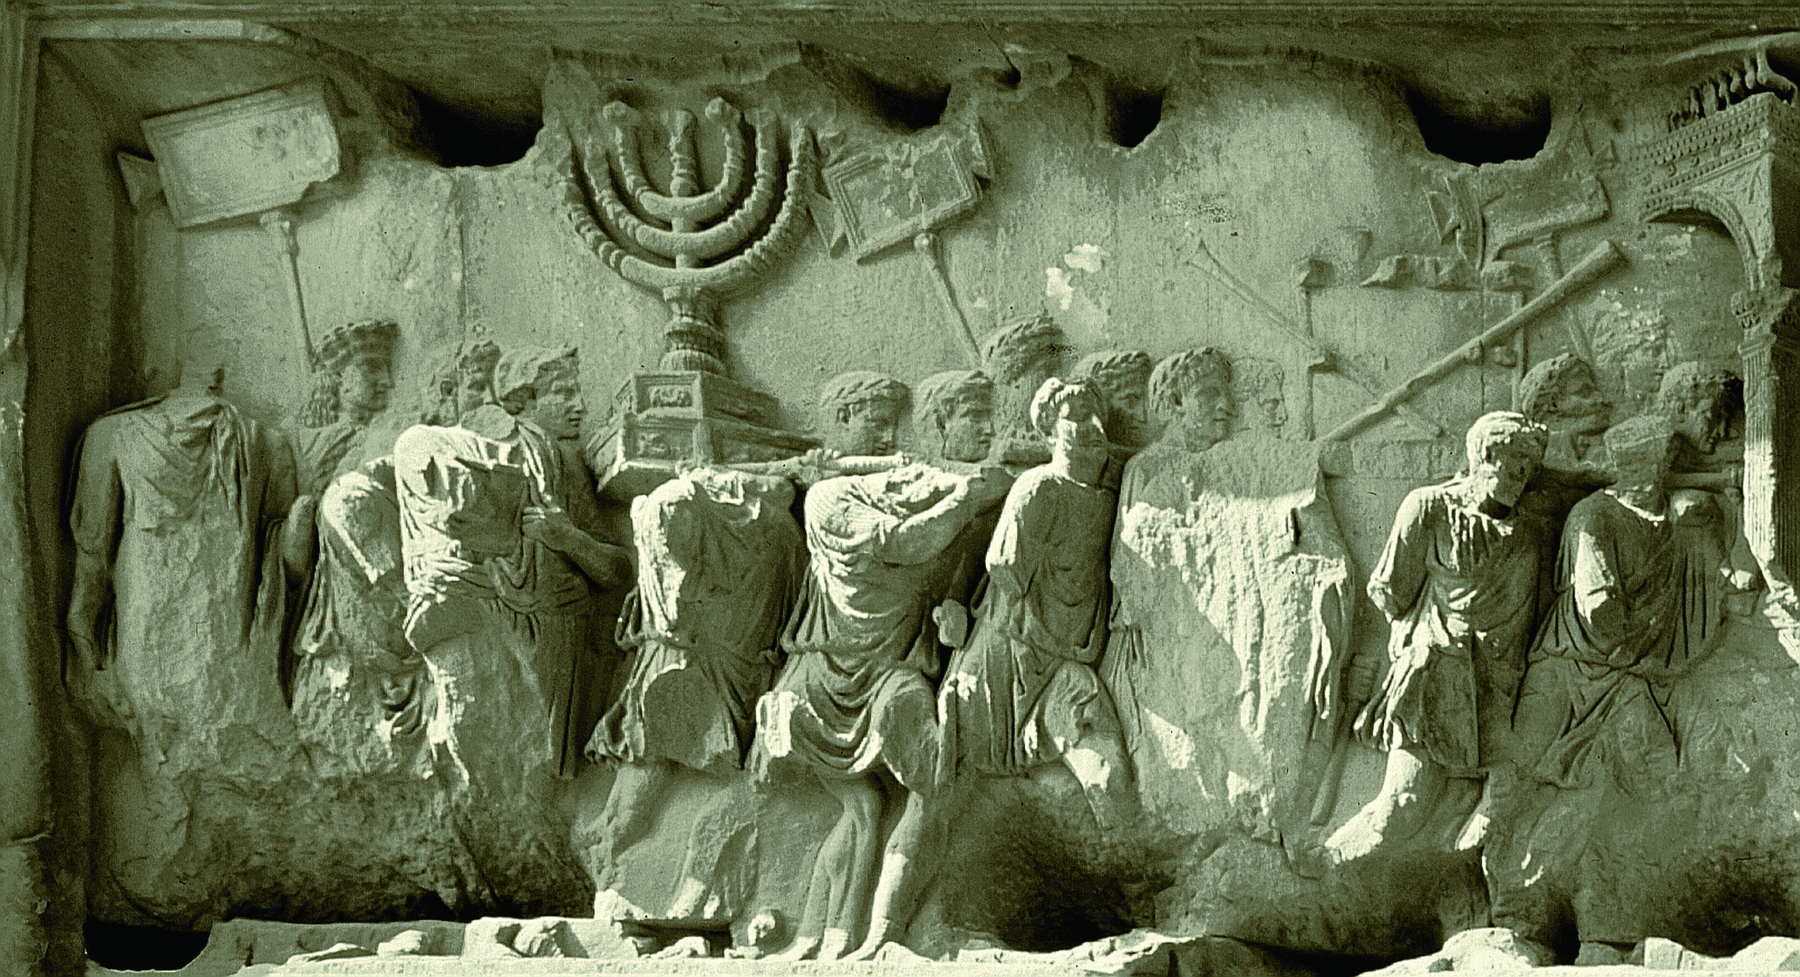 Escultura. Entalhe em uma pedra, representando um grupo de homens enfileirados, carregando um baú com diversos objetos, entre os quais um candelabro de sete braços, símbolo do judaísmo.